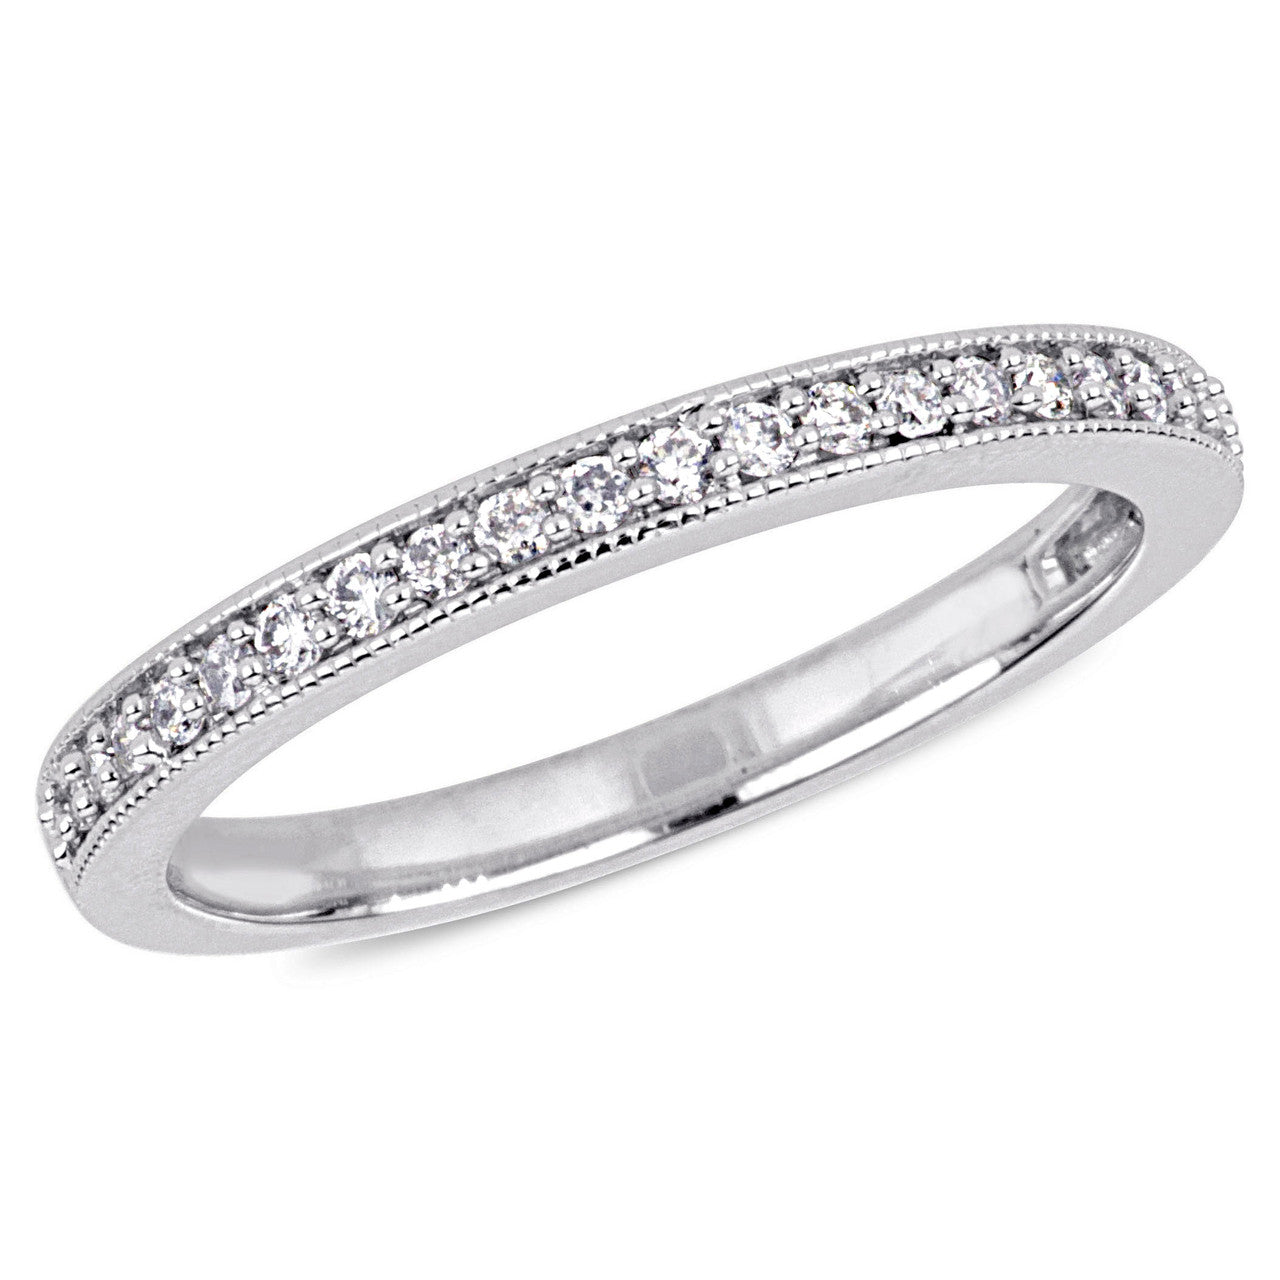 Ice Jewellery 1/5 CT Diamond TW Eternity Ring in 10k White Gold - 75000004969 | Ice Jewellery Australia